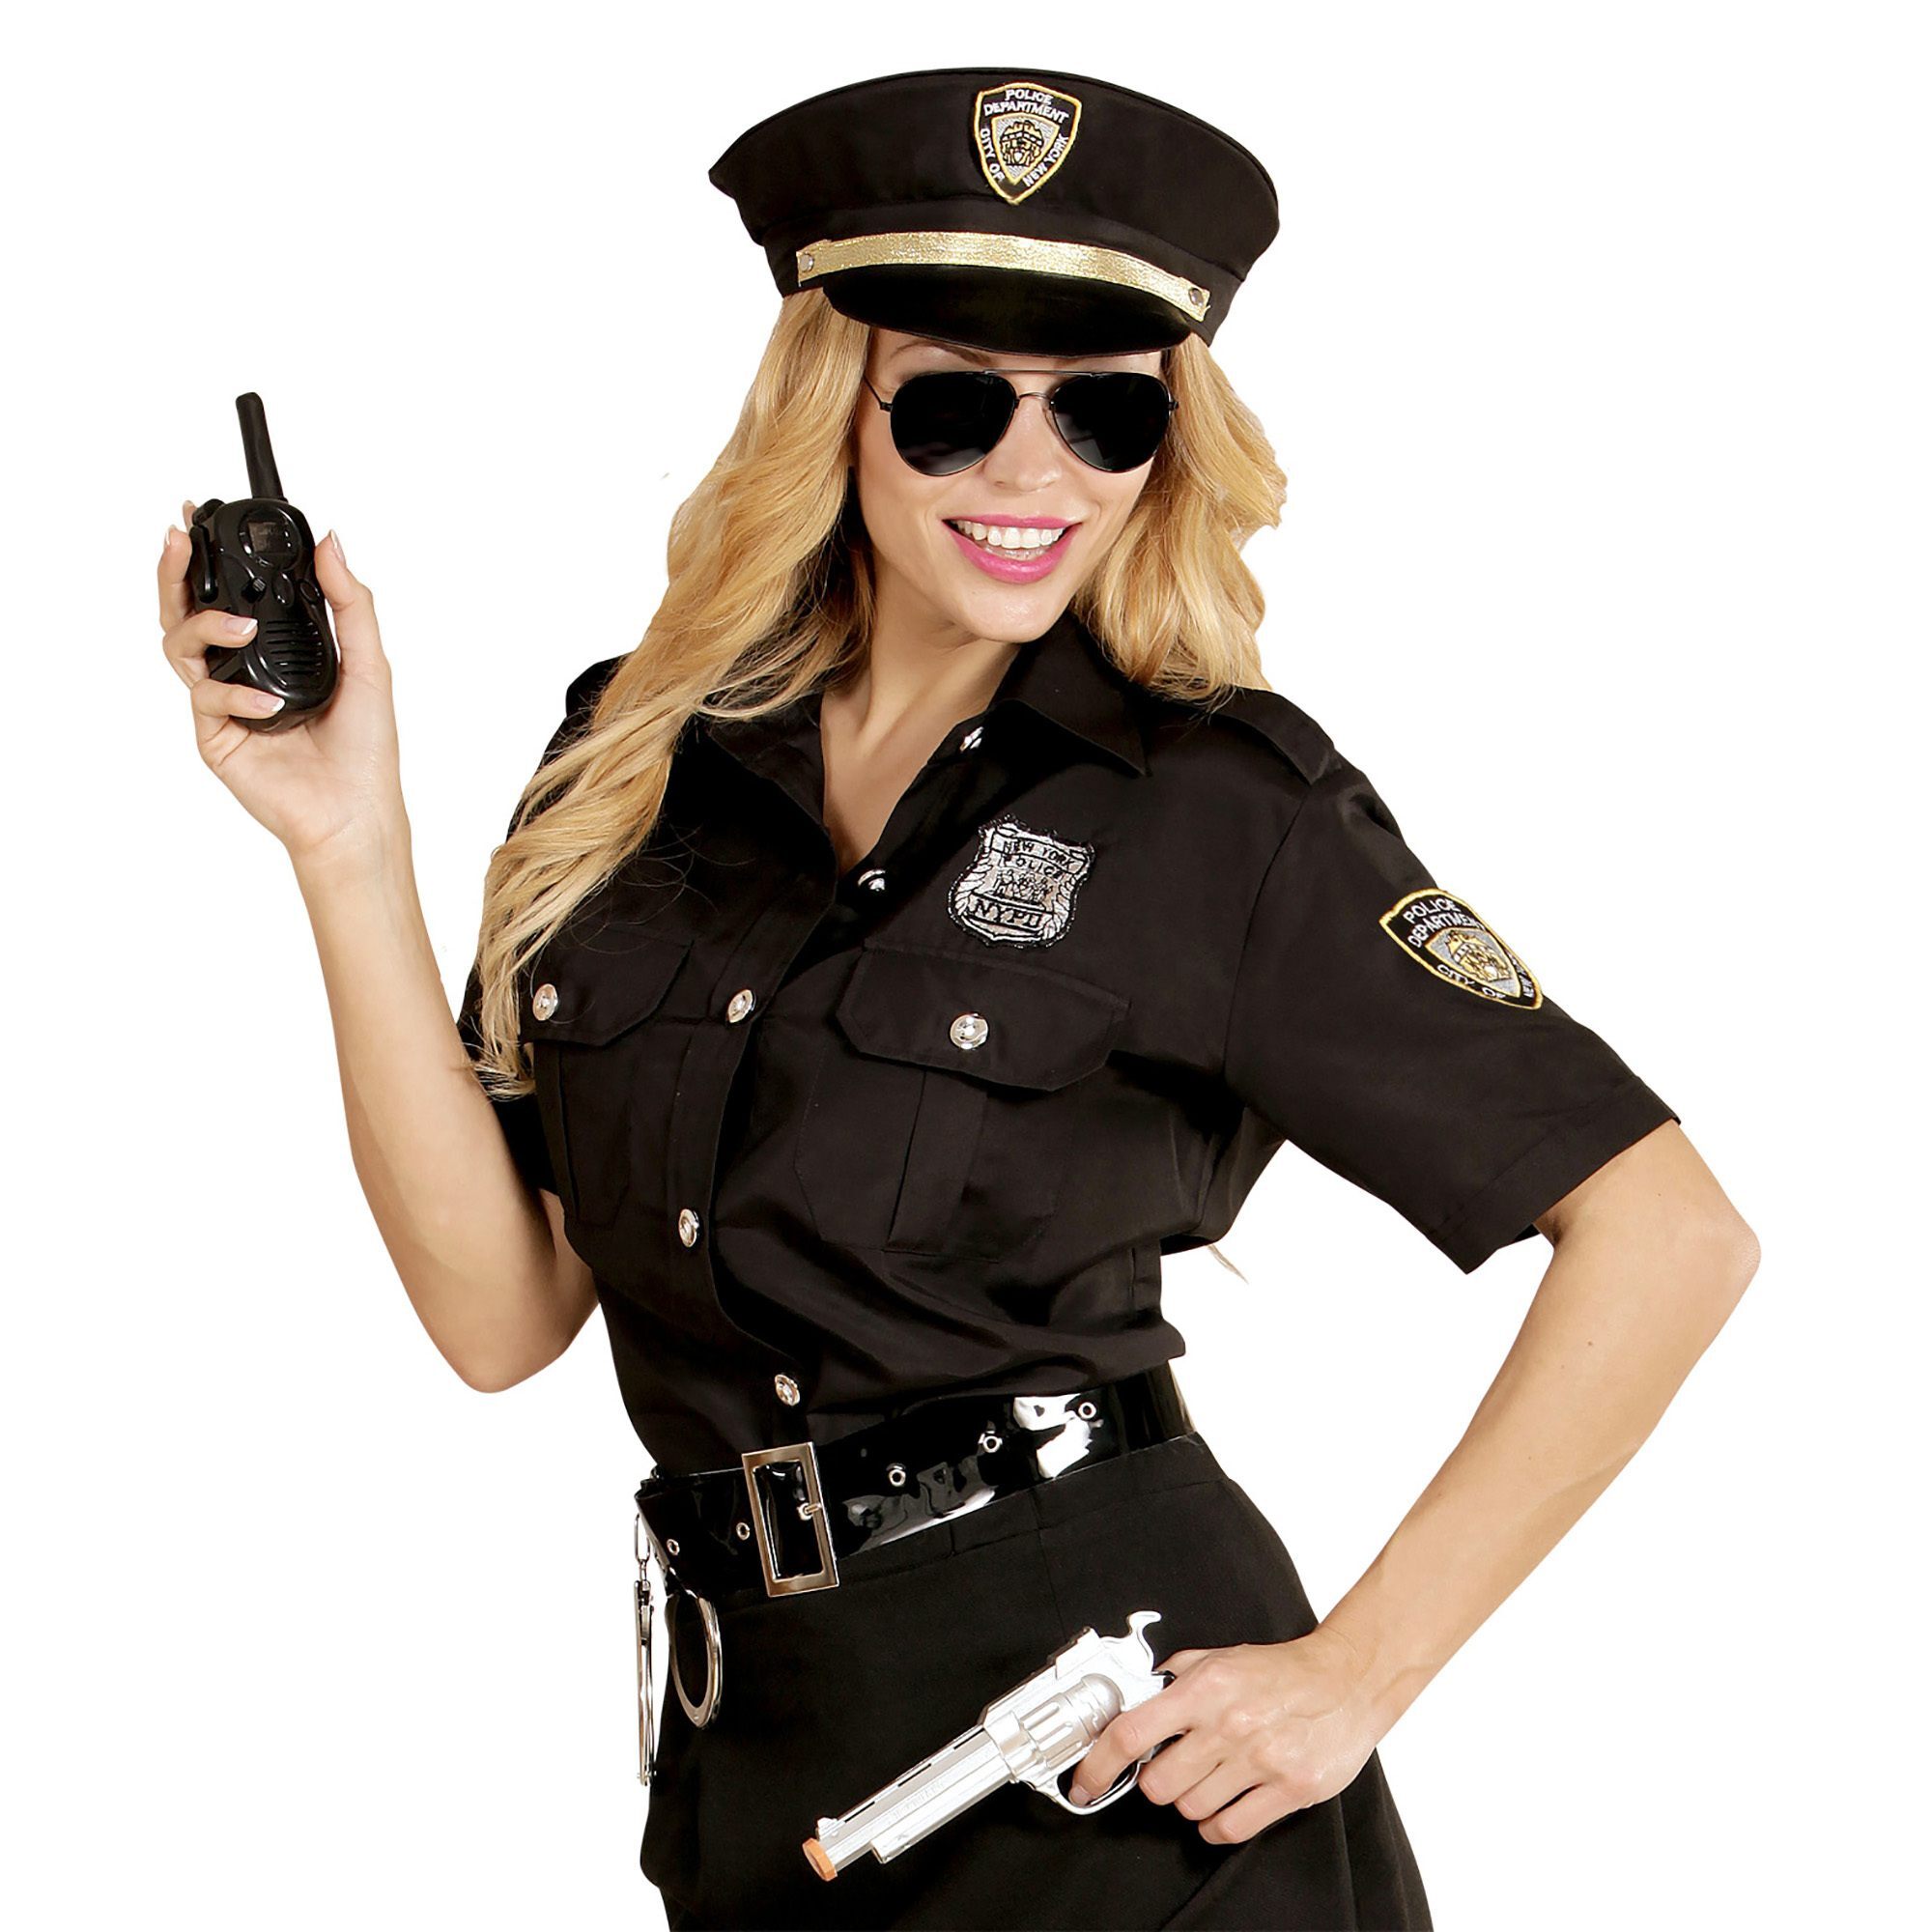 Politiepak vrouwen outfit